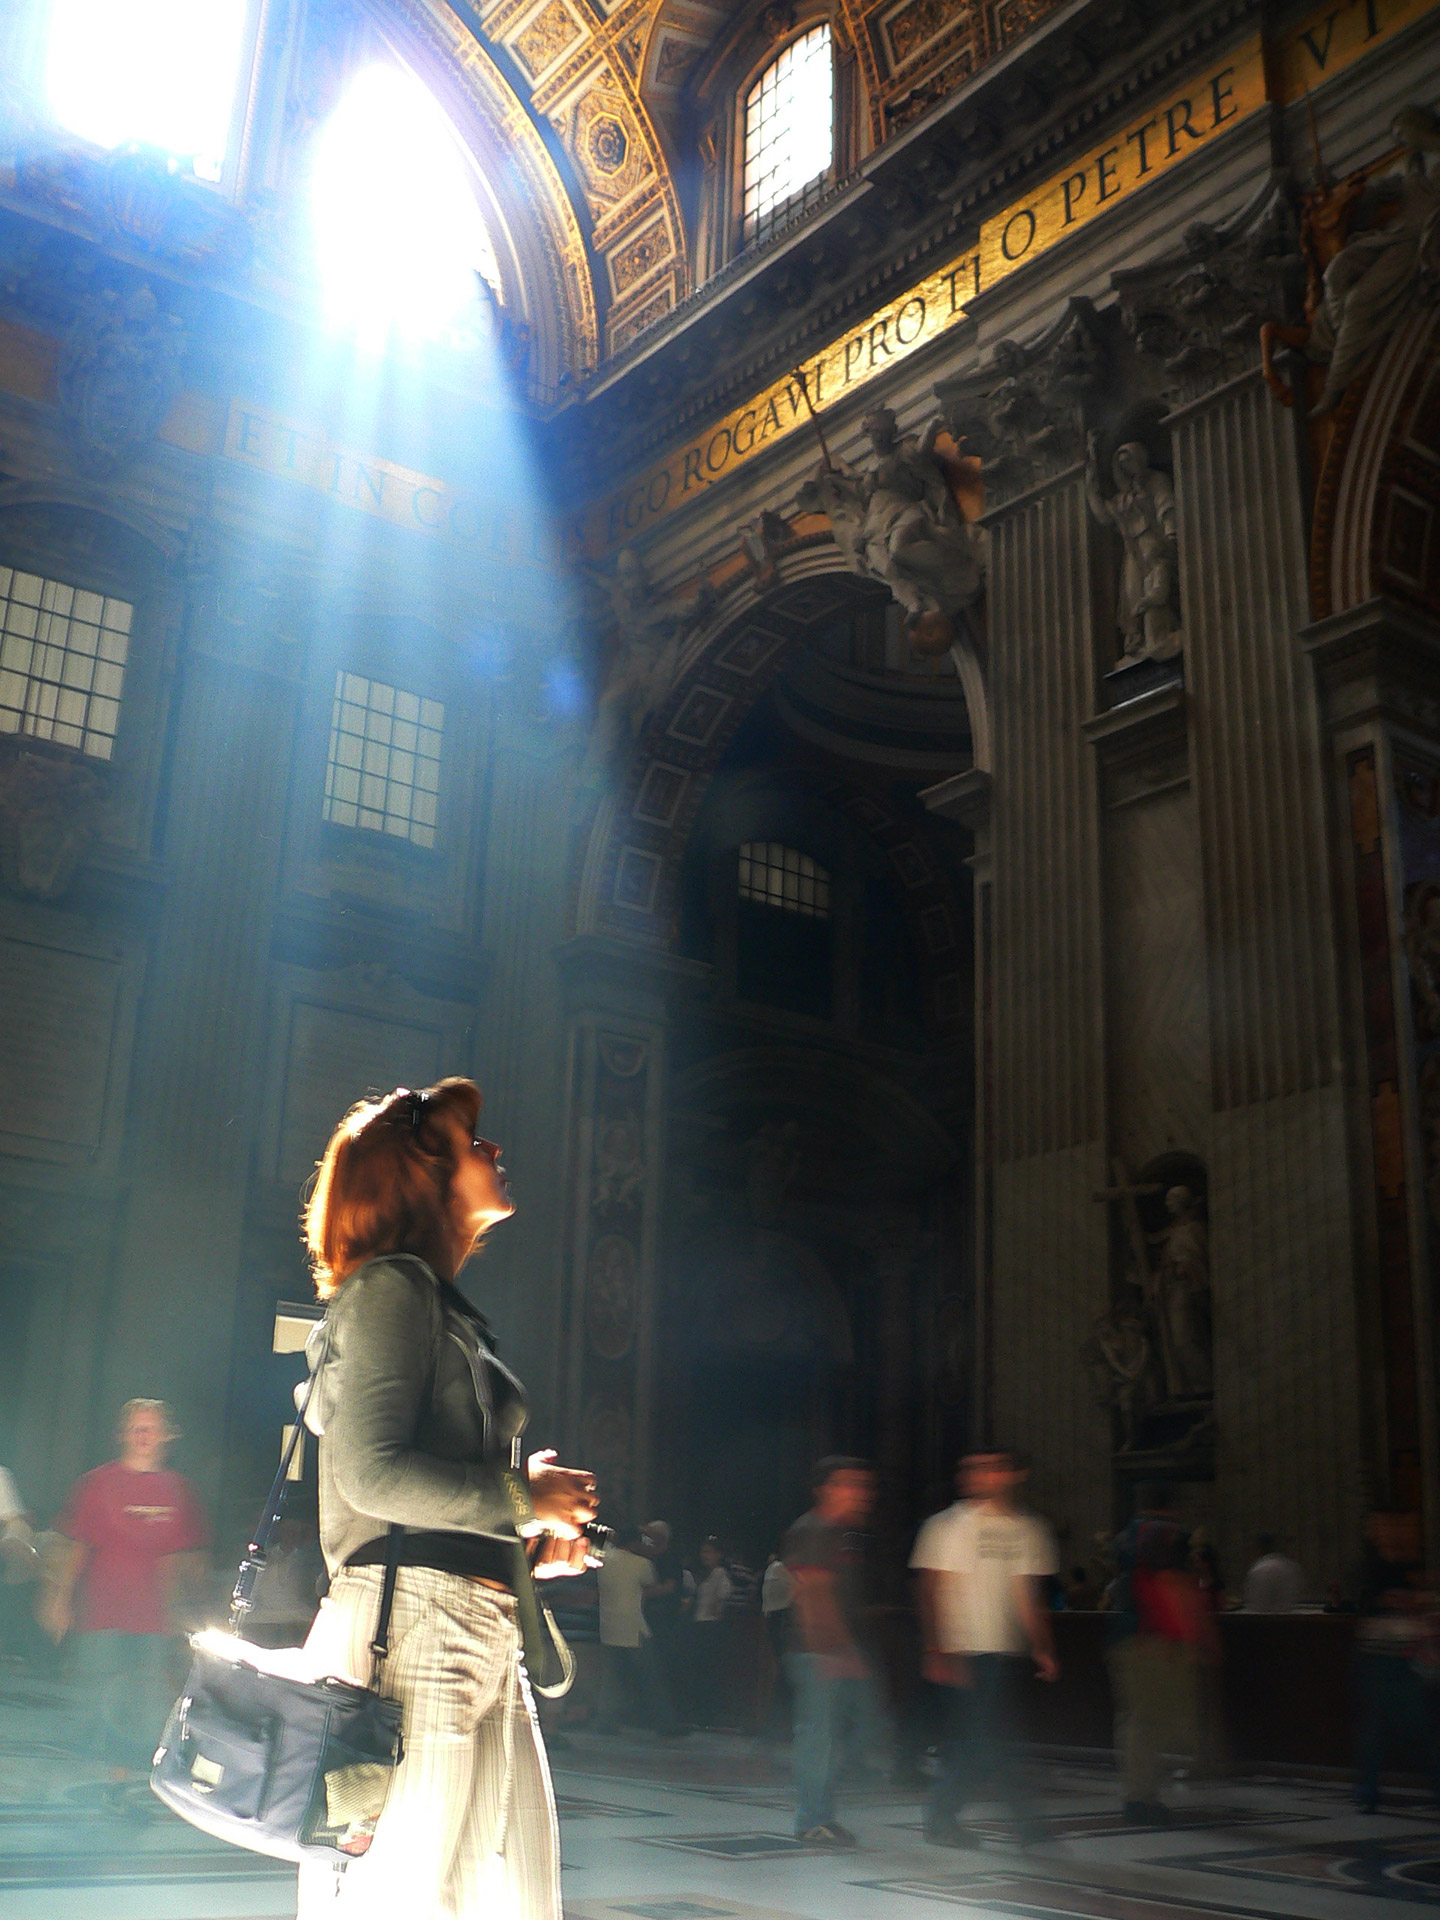 Rzym, Watykan, Bazylika Piotra i Pawła, barok, architektura, podróże, podróże po Europie, fotografia Monika Turska